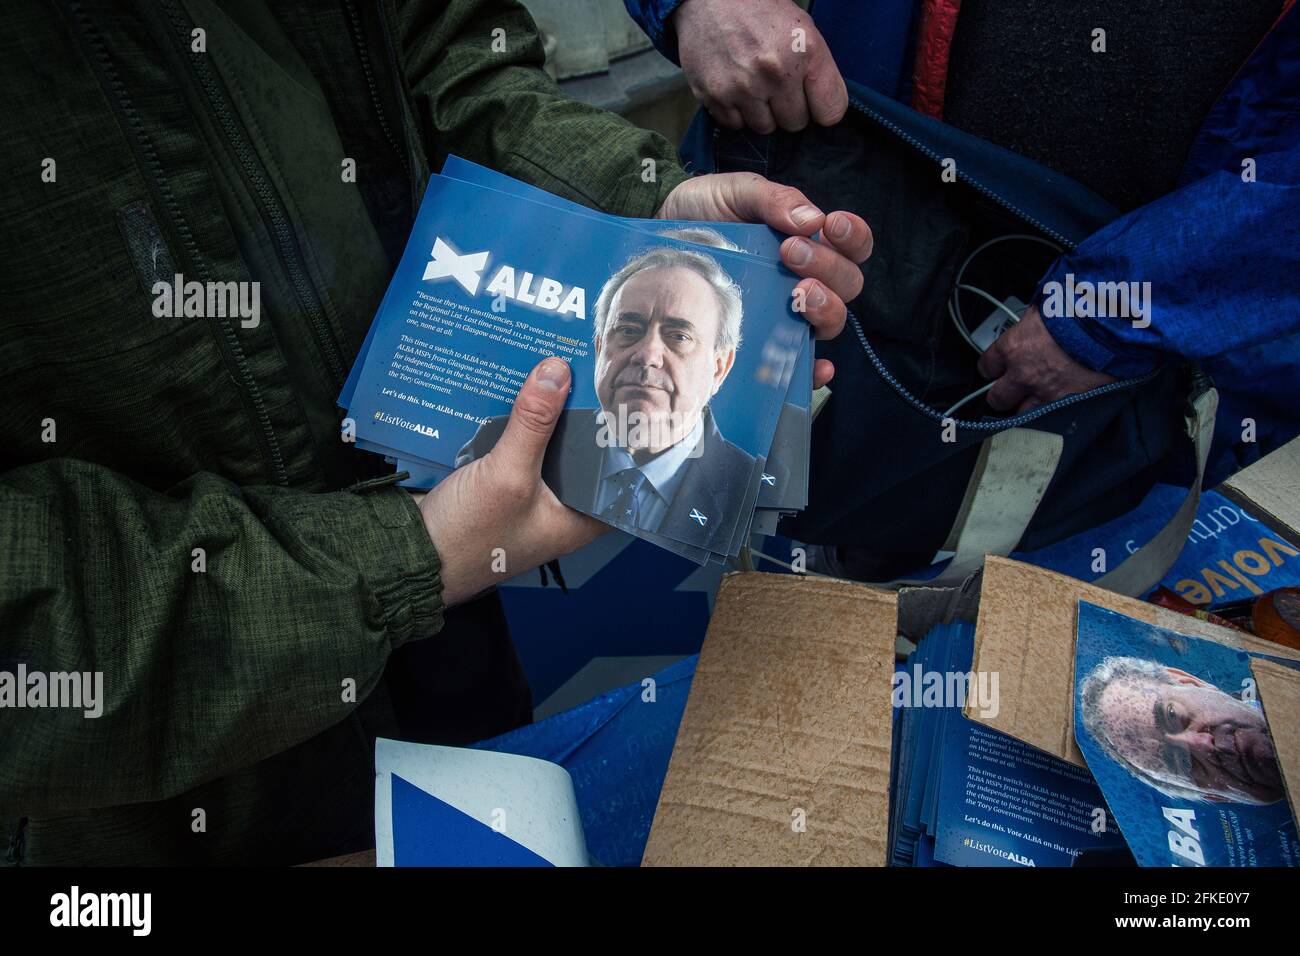 ALBA-Partei, die im Kelvingrove Park mit Kampagnenmaterial wirbt, das von Freiwilligen in Glasgow, Schottland, gesammelt wurde. Stockfoto